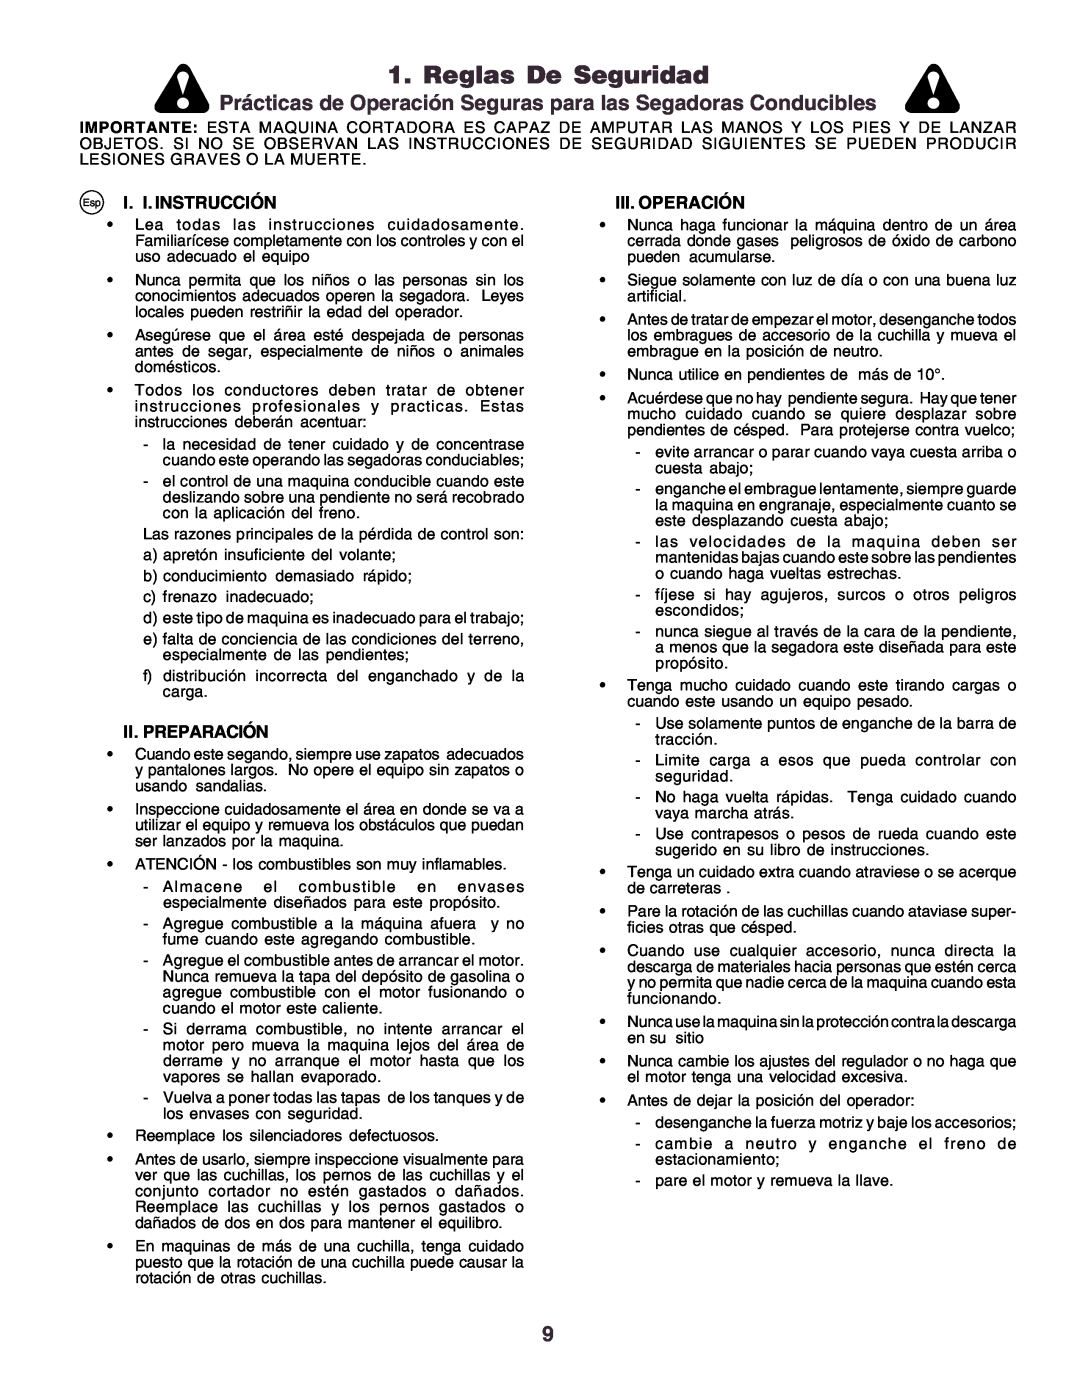 Husqvarna CT160 instruction manual Reglas De Seguridad, Esp I. I. INSTRUCCIÓN, Iii. Operación, Ii.Preparación 